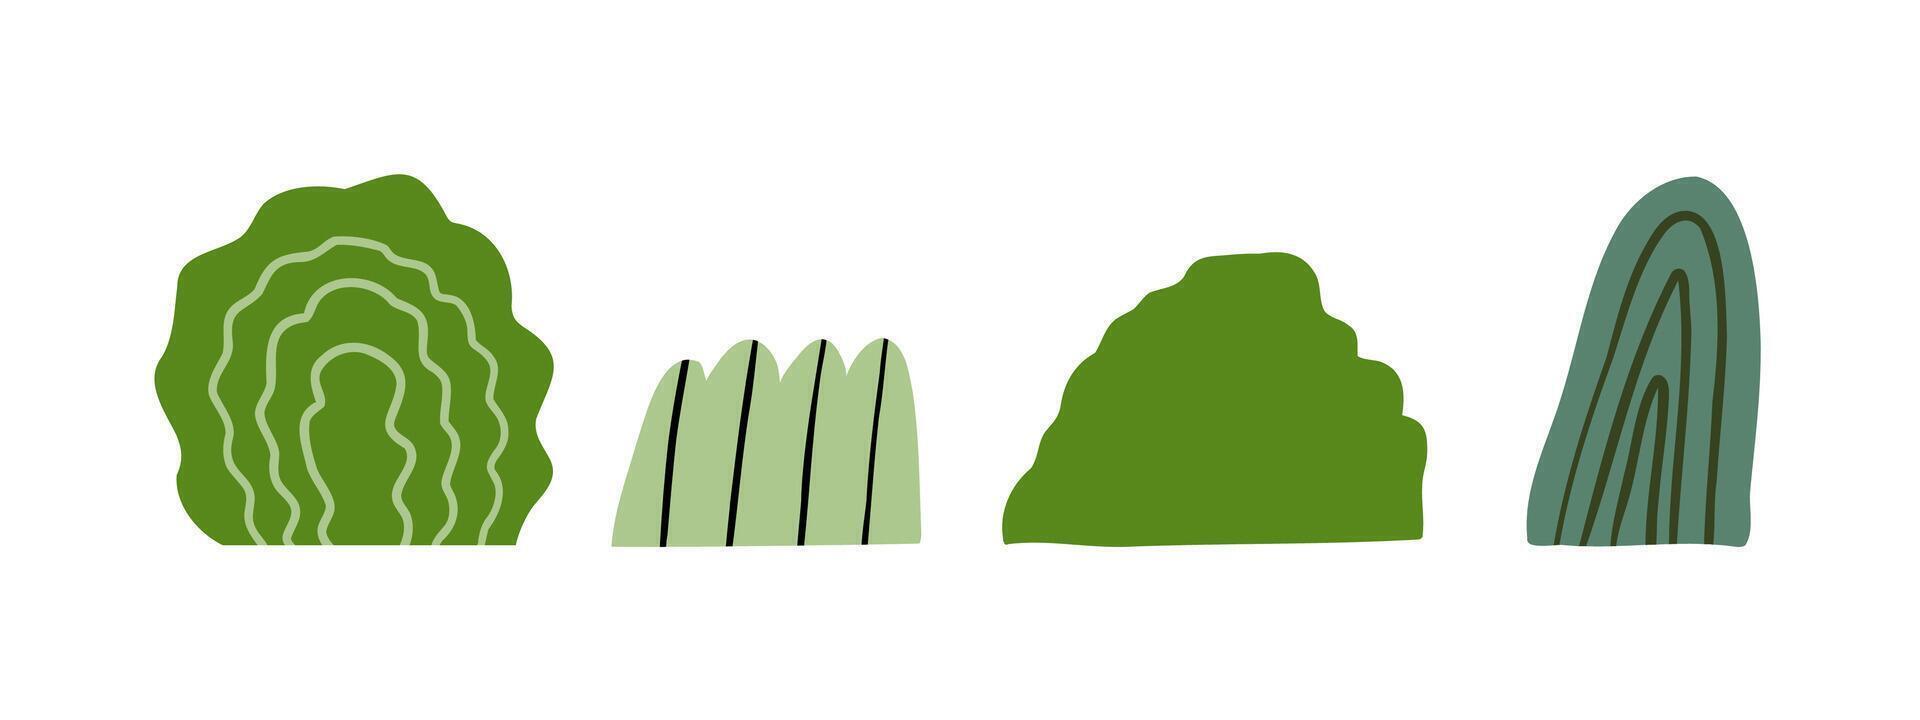 einstellen von Gekritzel Gebüsch von anders Formen. Dschungel, Wald, Natur. Hand gezeichnet Illustration im eben Stil. vektor